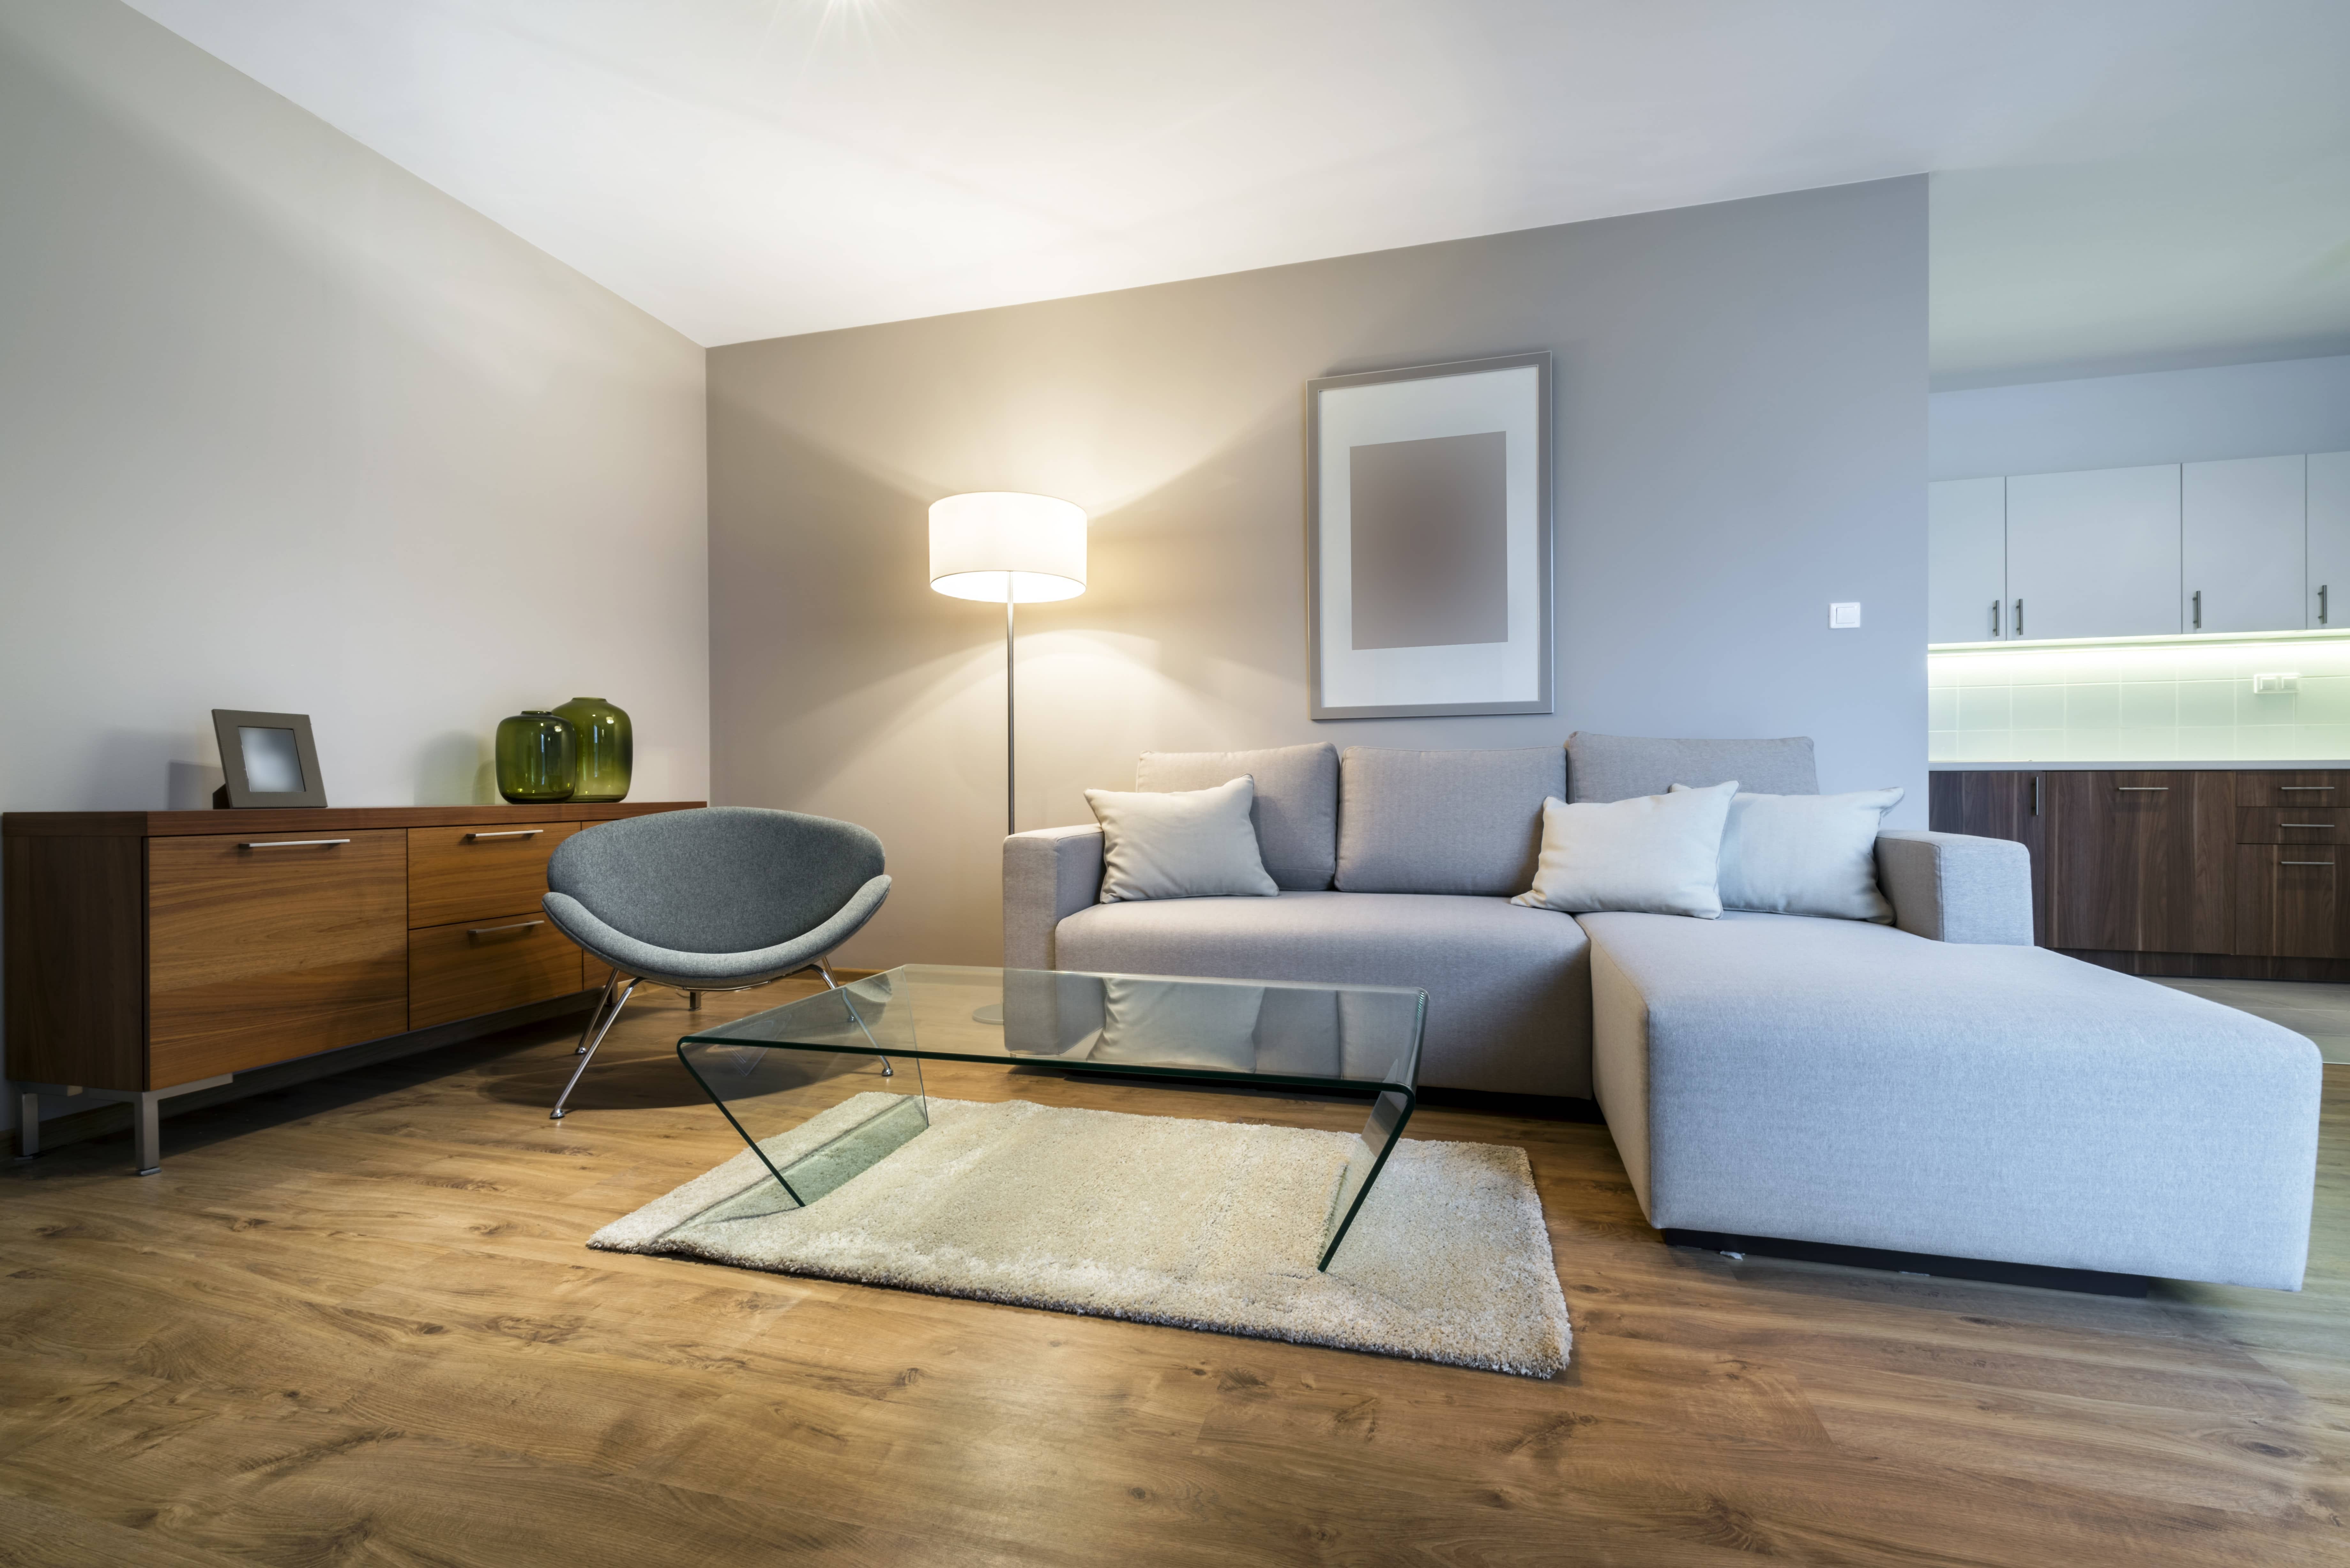 Salon meublé, immobilier neuf et moderne